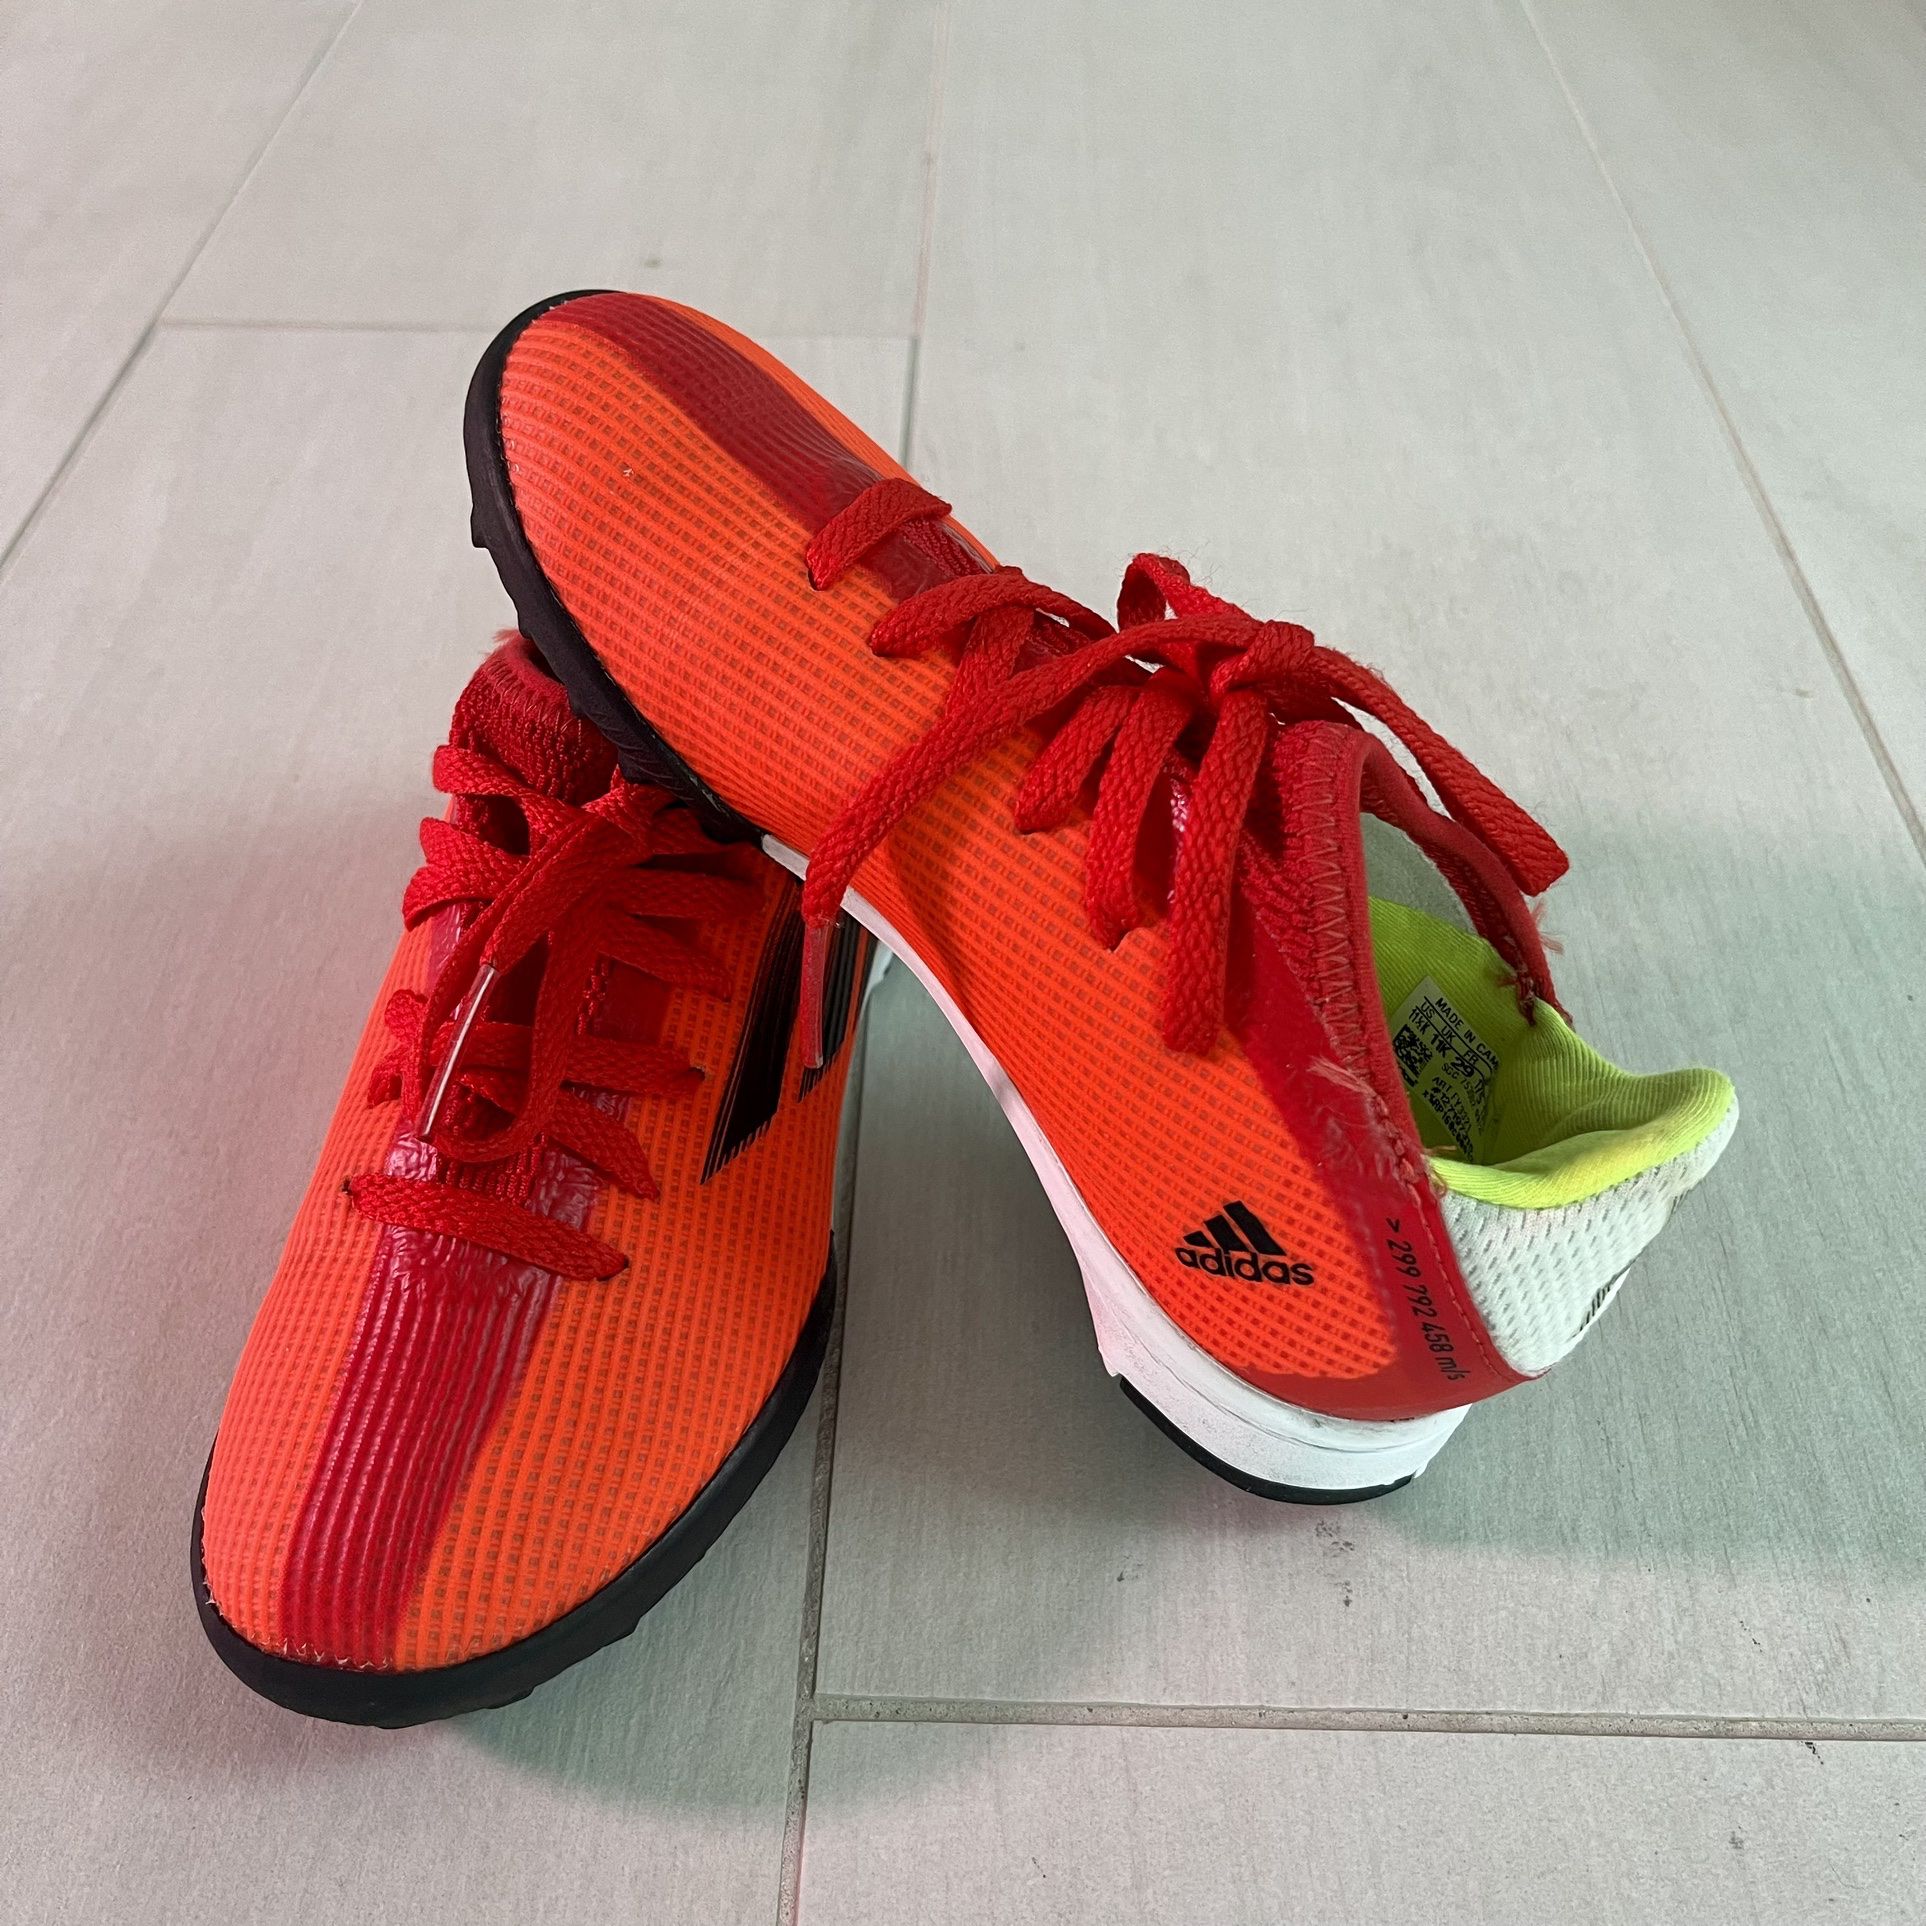 Soccer Shoes Kids Size 11.5 - Zappos De Fútbol Talla 11.5